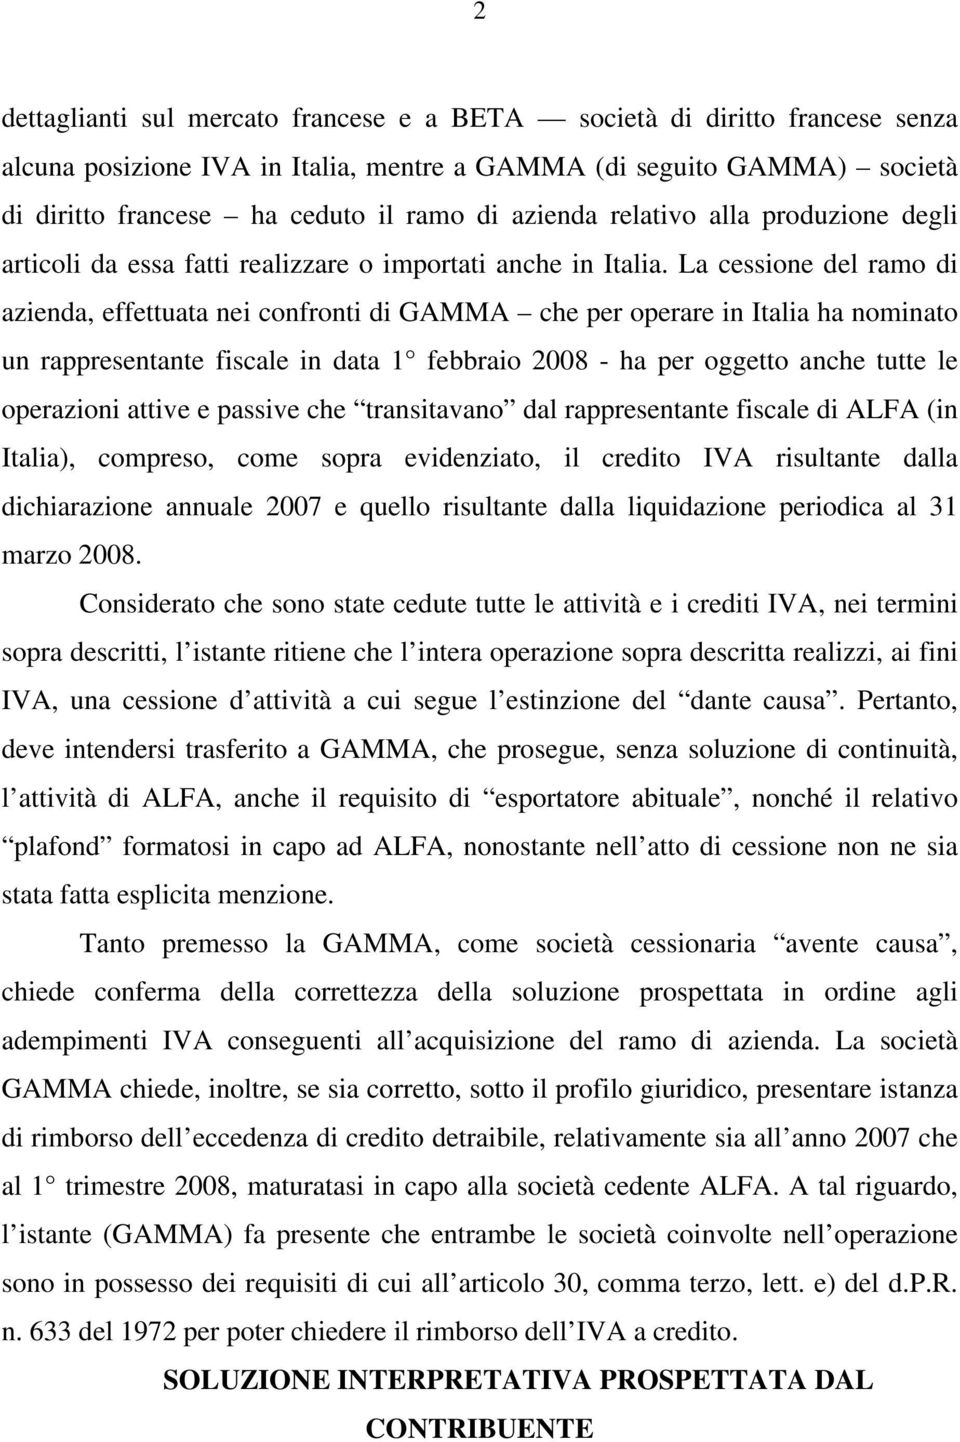 La cessione del ramo di azienda, effettuata nei confronti di GAMMA che per operare in Italia ha nominato un rappresentante fiscale in data 1 febbraio 2008 - ha per oggetto anche tutte le operazioni